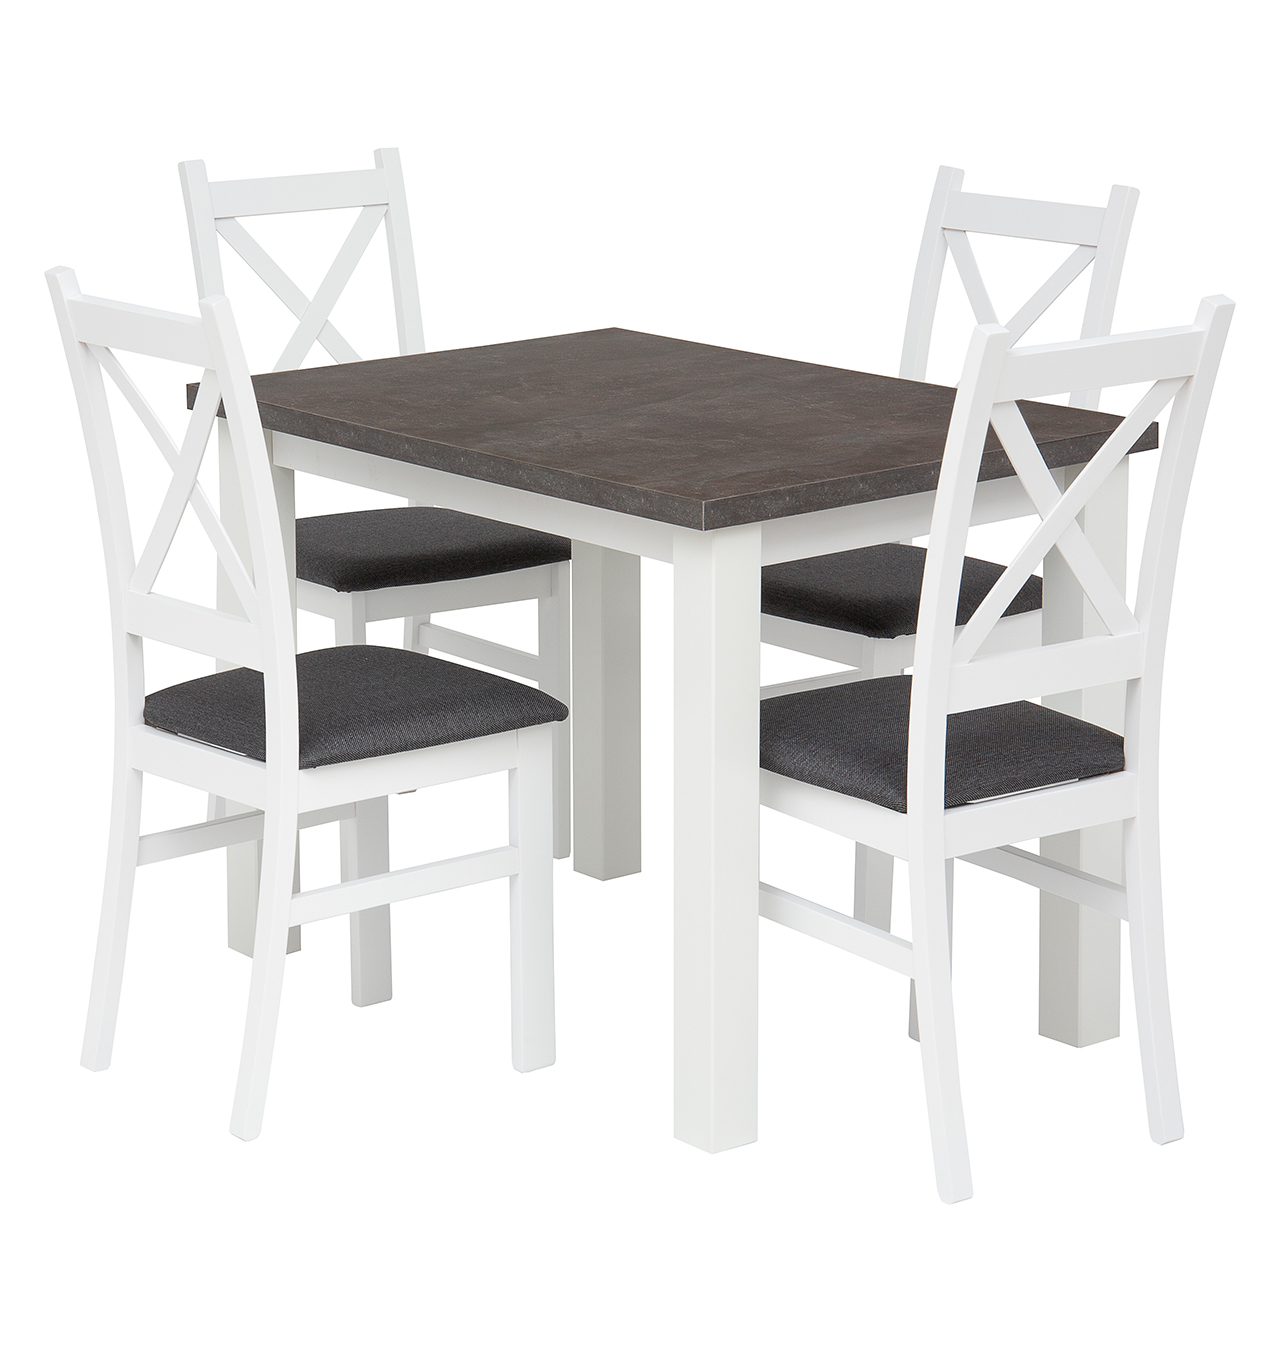 Zestaw stół Monte (beton/biały) + 4 krzesła Carlo (biało/szare)